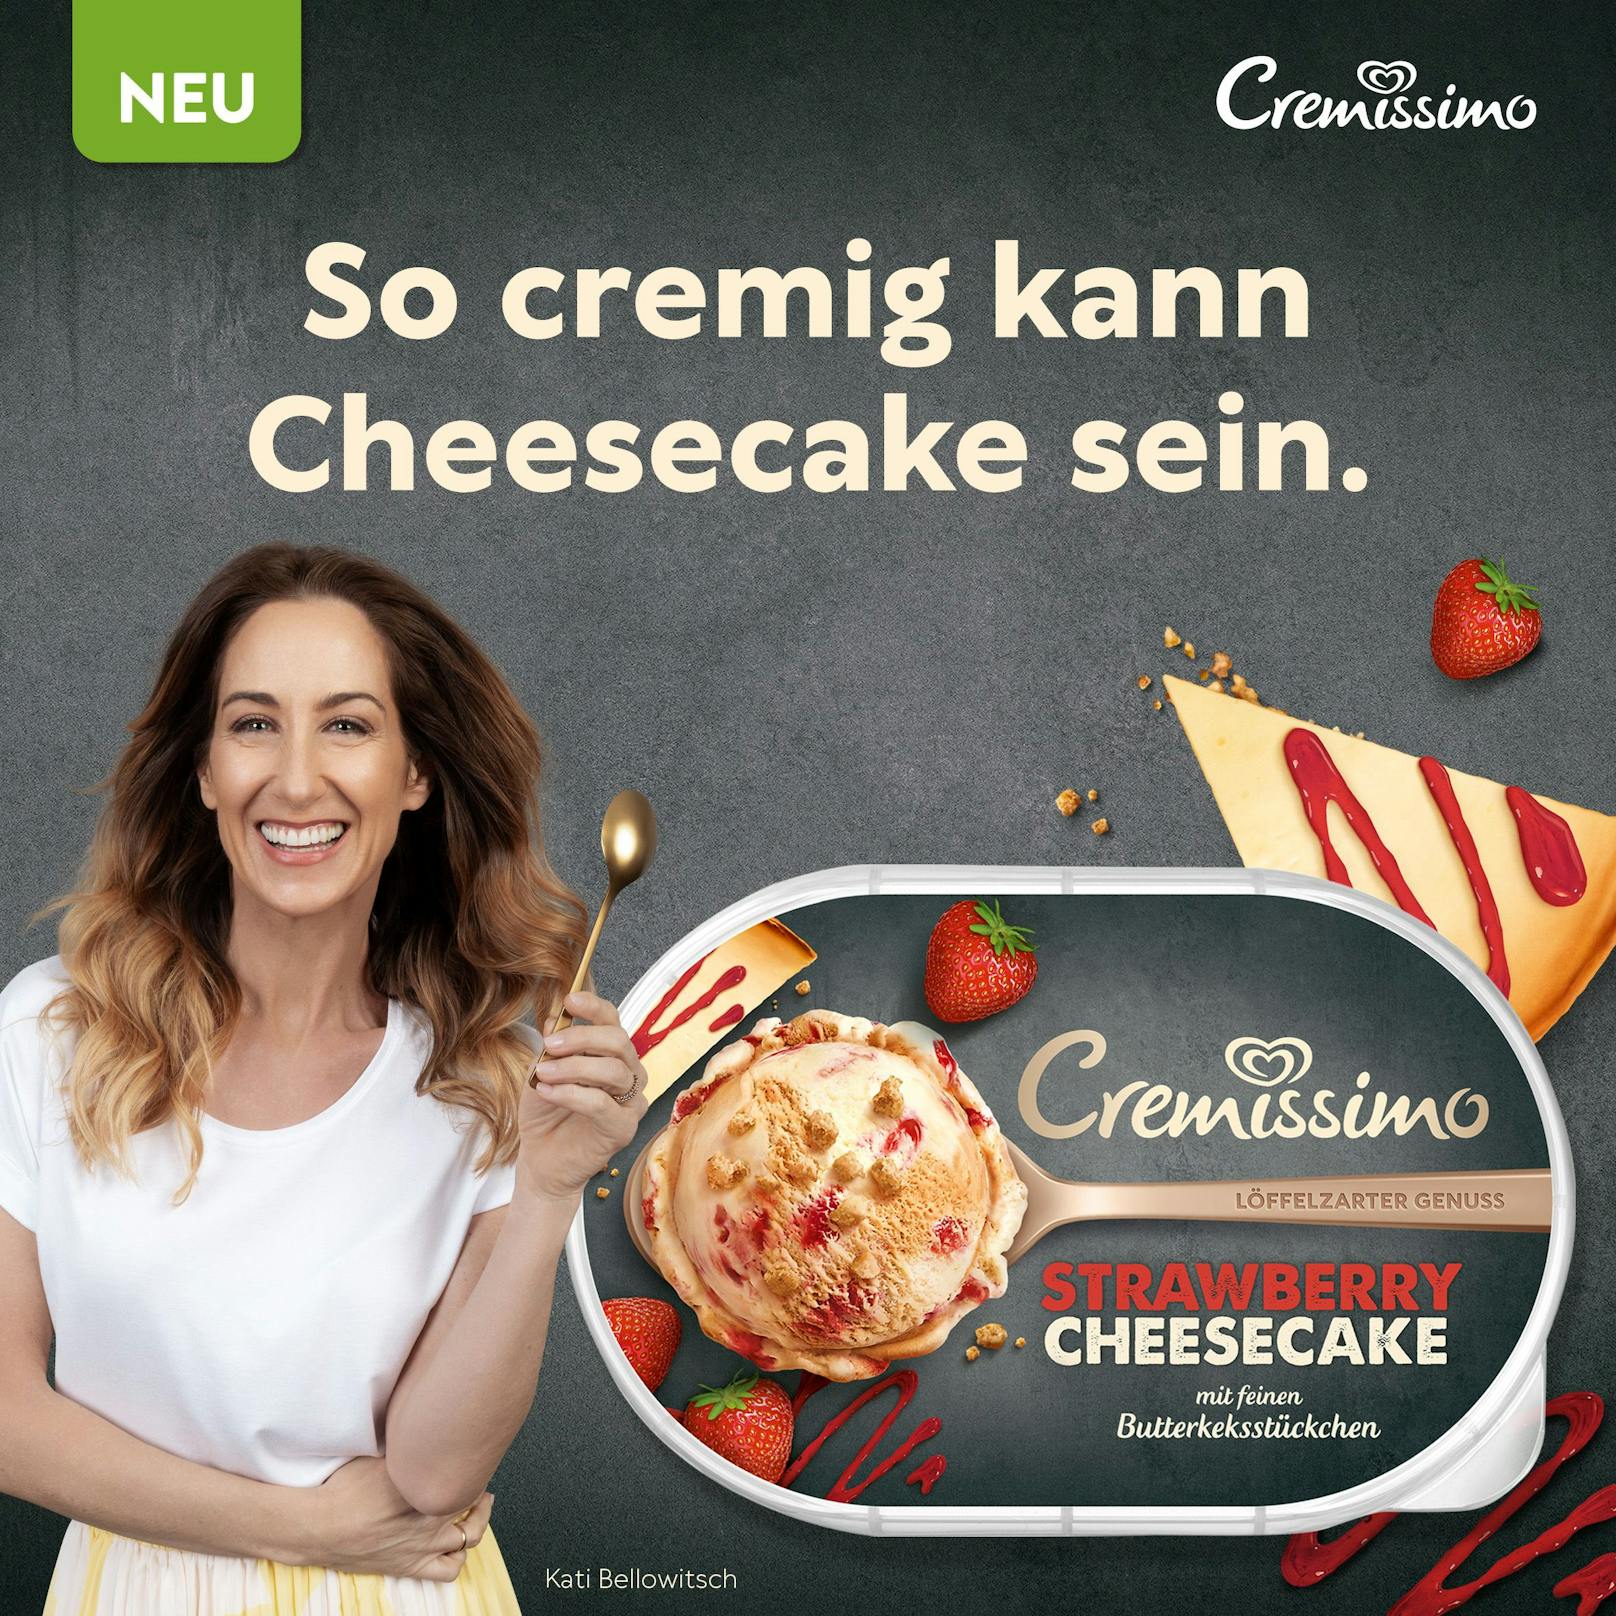 Kati Bellowitsch stellt das neue Cremissimo Strawberry Cheesecake Eis vor.